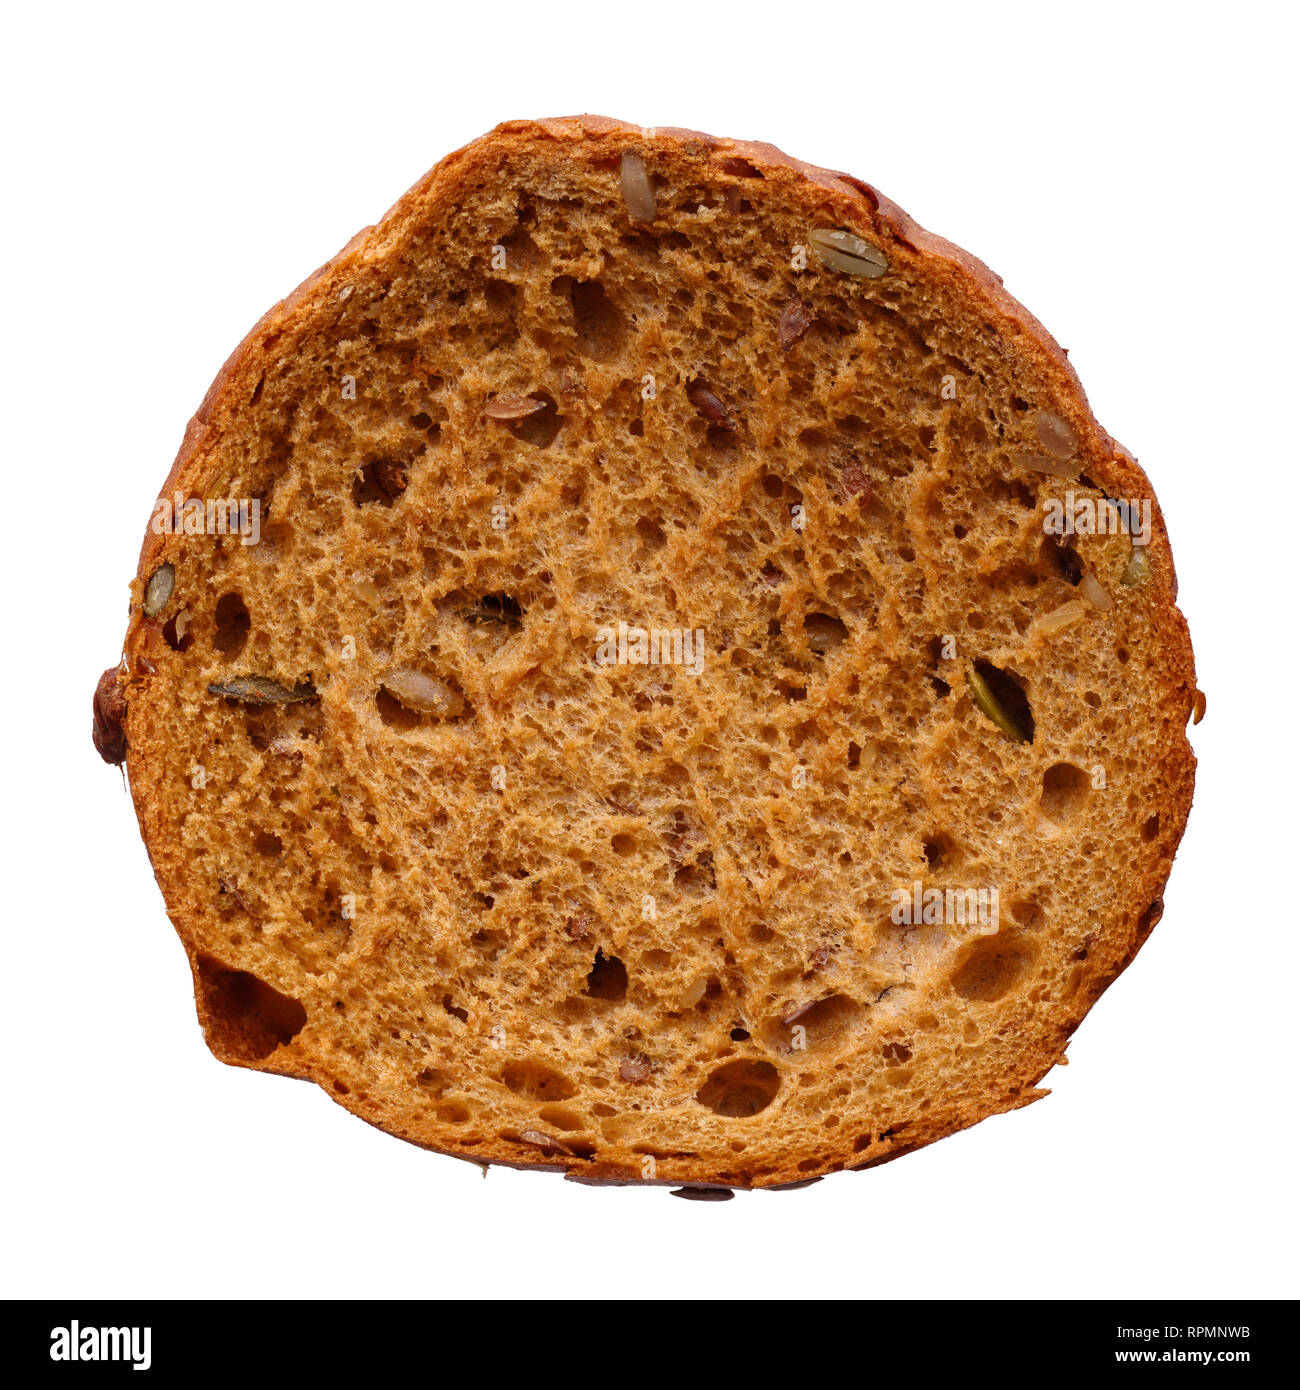 Nourriture et boissons : seul round multigrain, pain avec des graines entières, isolé sur fond blanc Banque D'Images